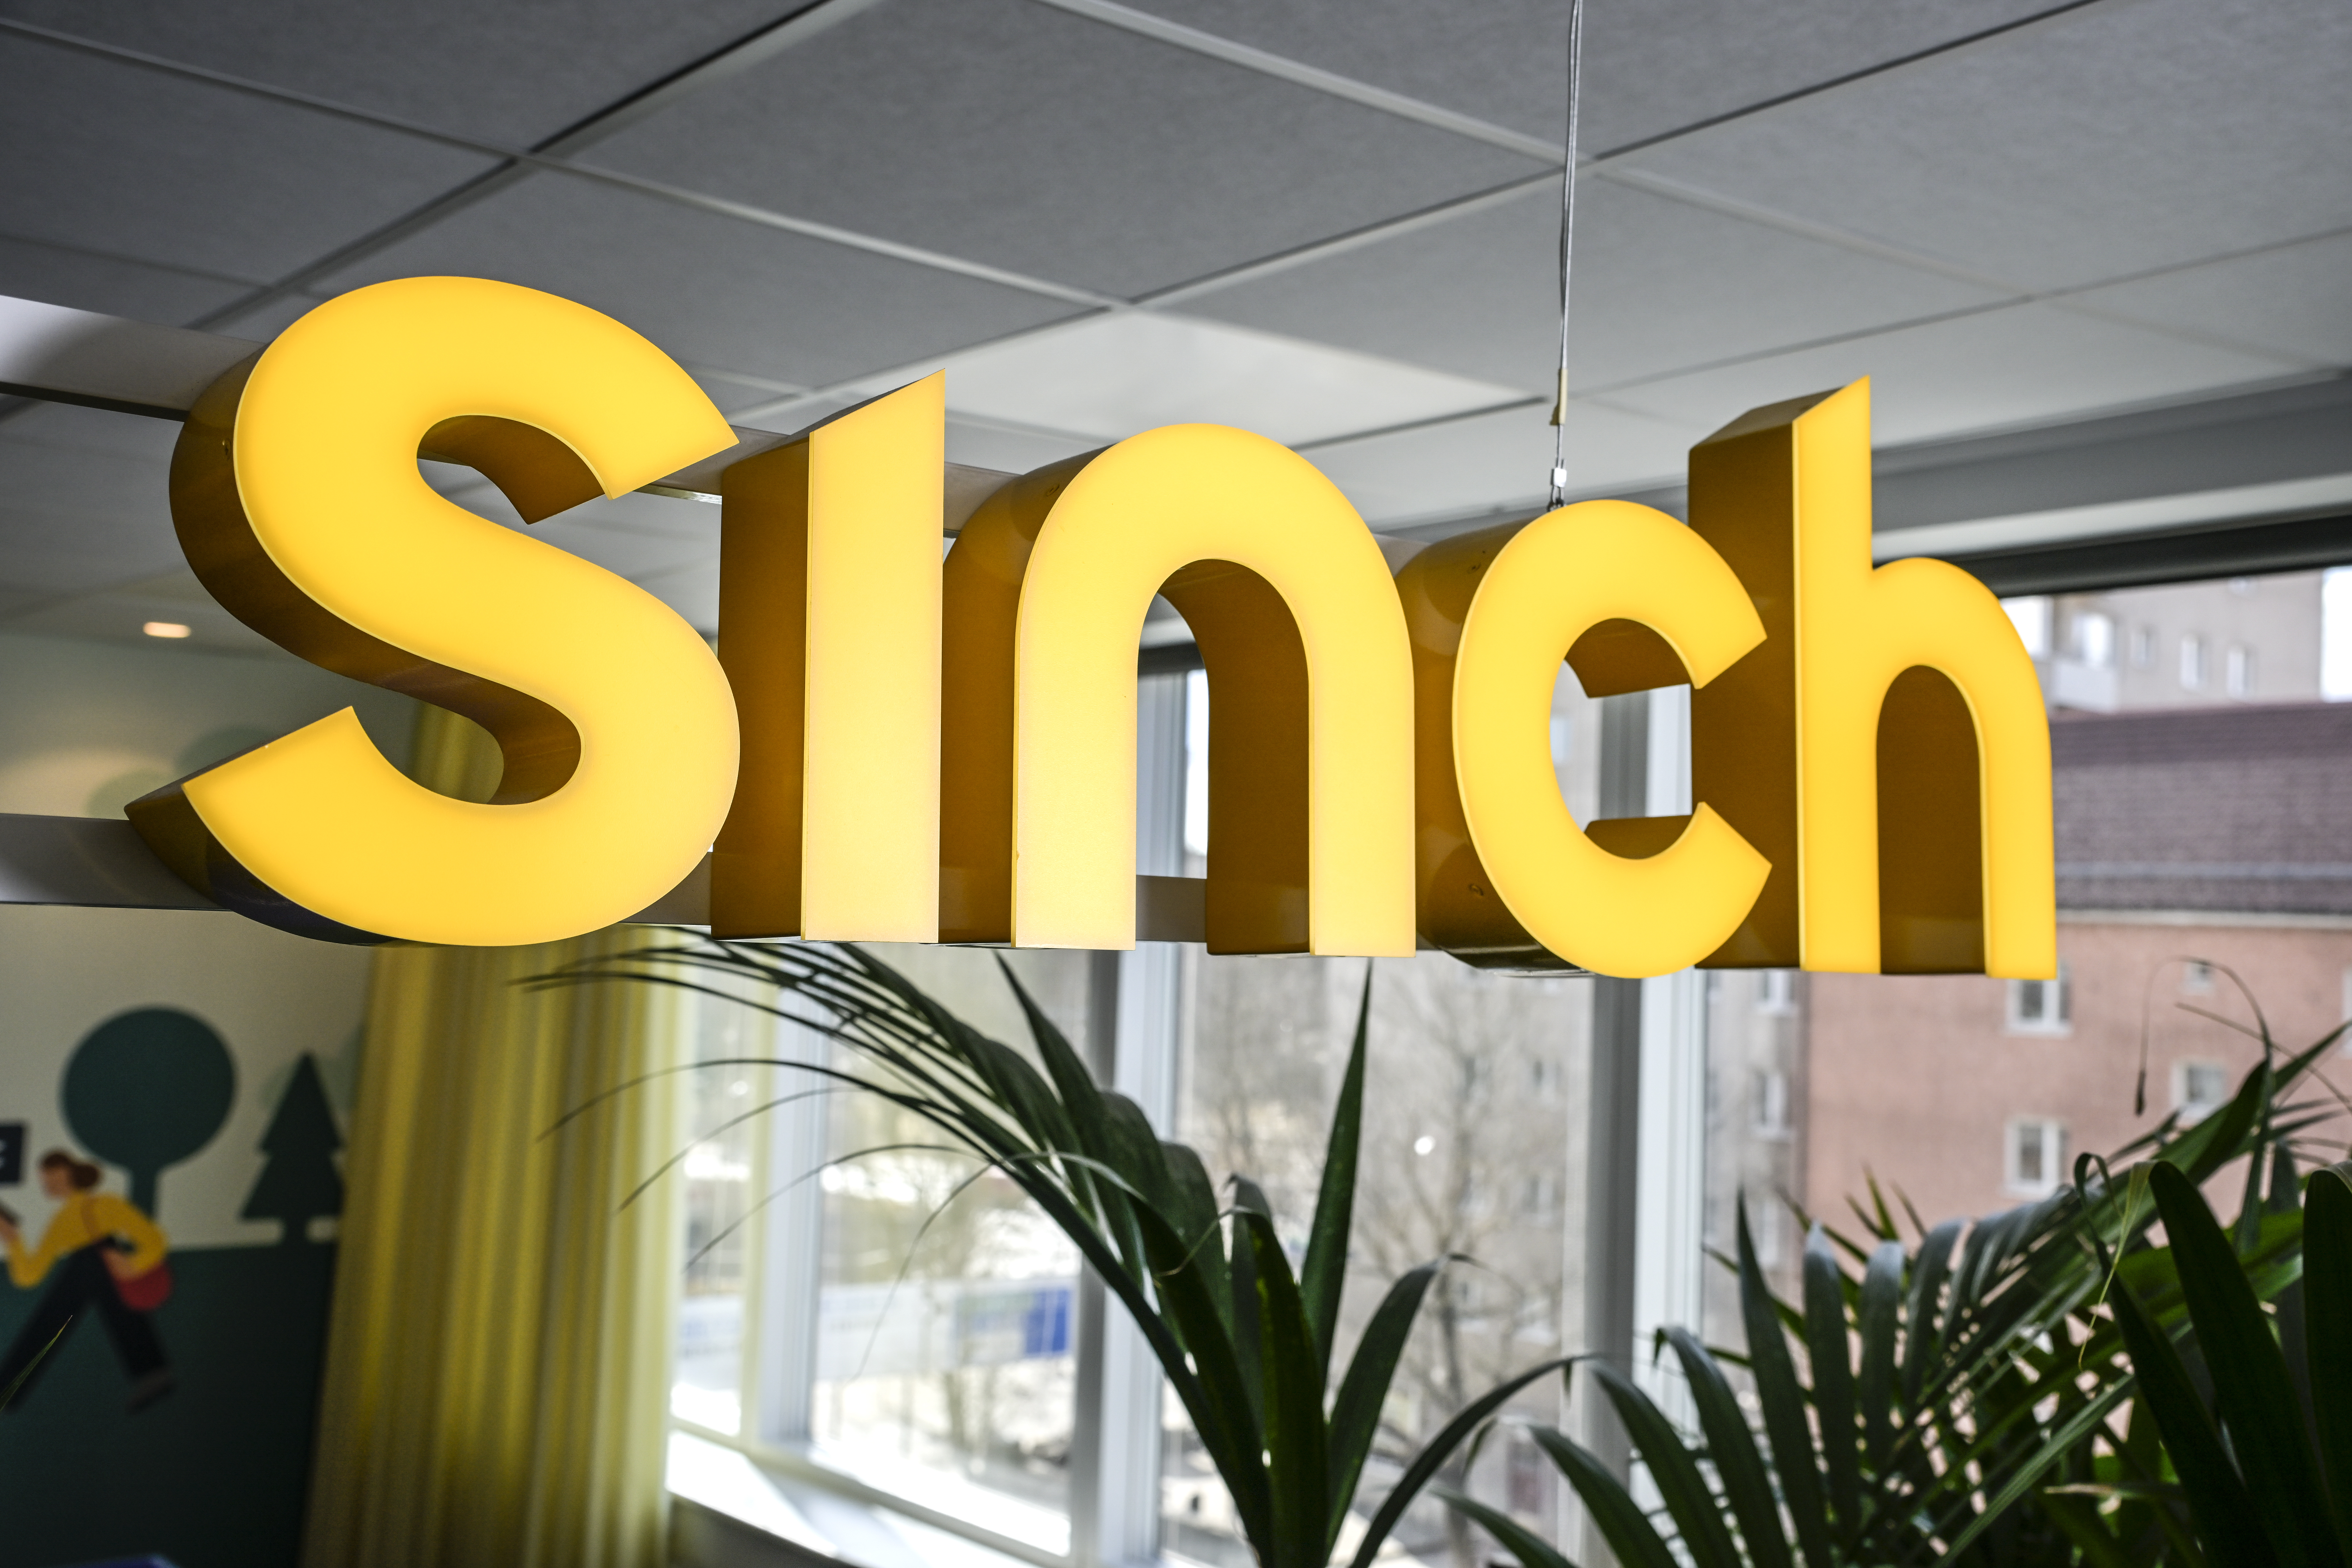 Nedgång på Stockholmsbörsen – Sinch rusade 23% - WEB_INRIKES